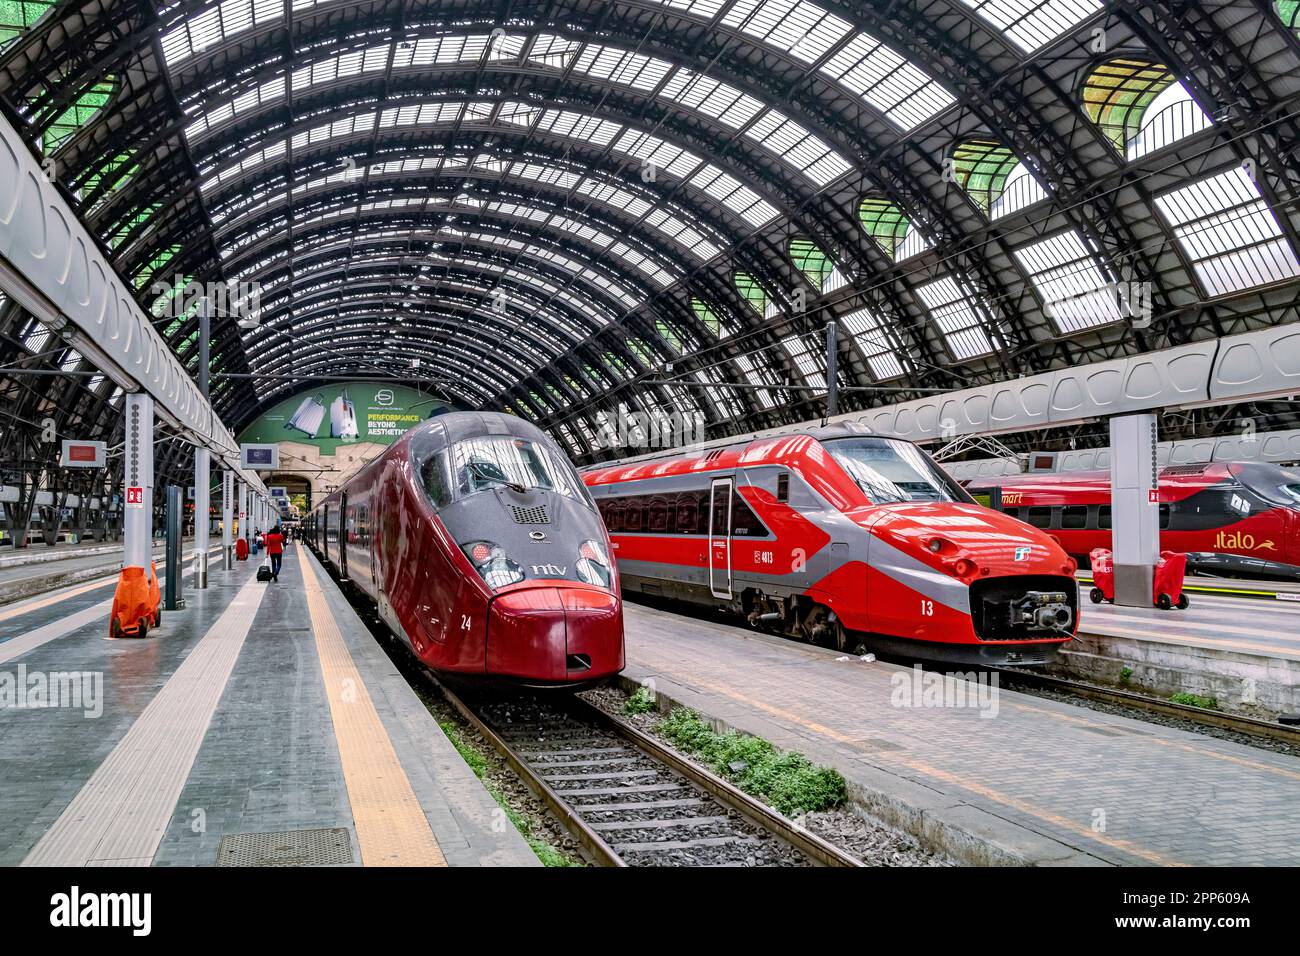 Un train à grande vitesse italien à côté d'un Trenitalia ETR 700 sous le toit voûté à la gare centrale de Milan, Milan, Italie Banque D'Images